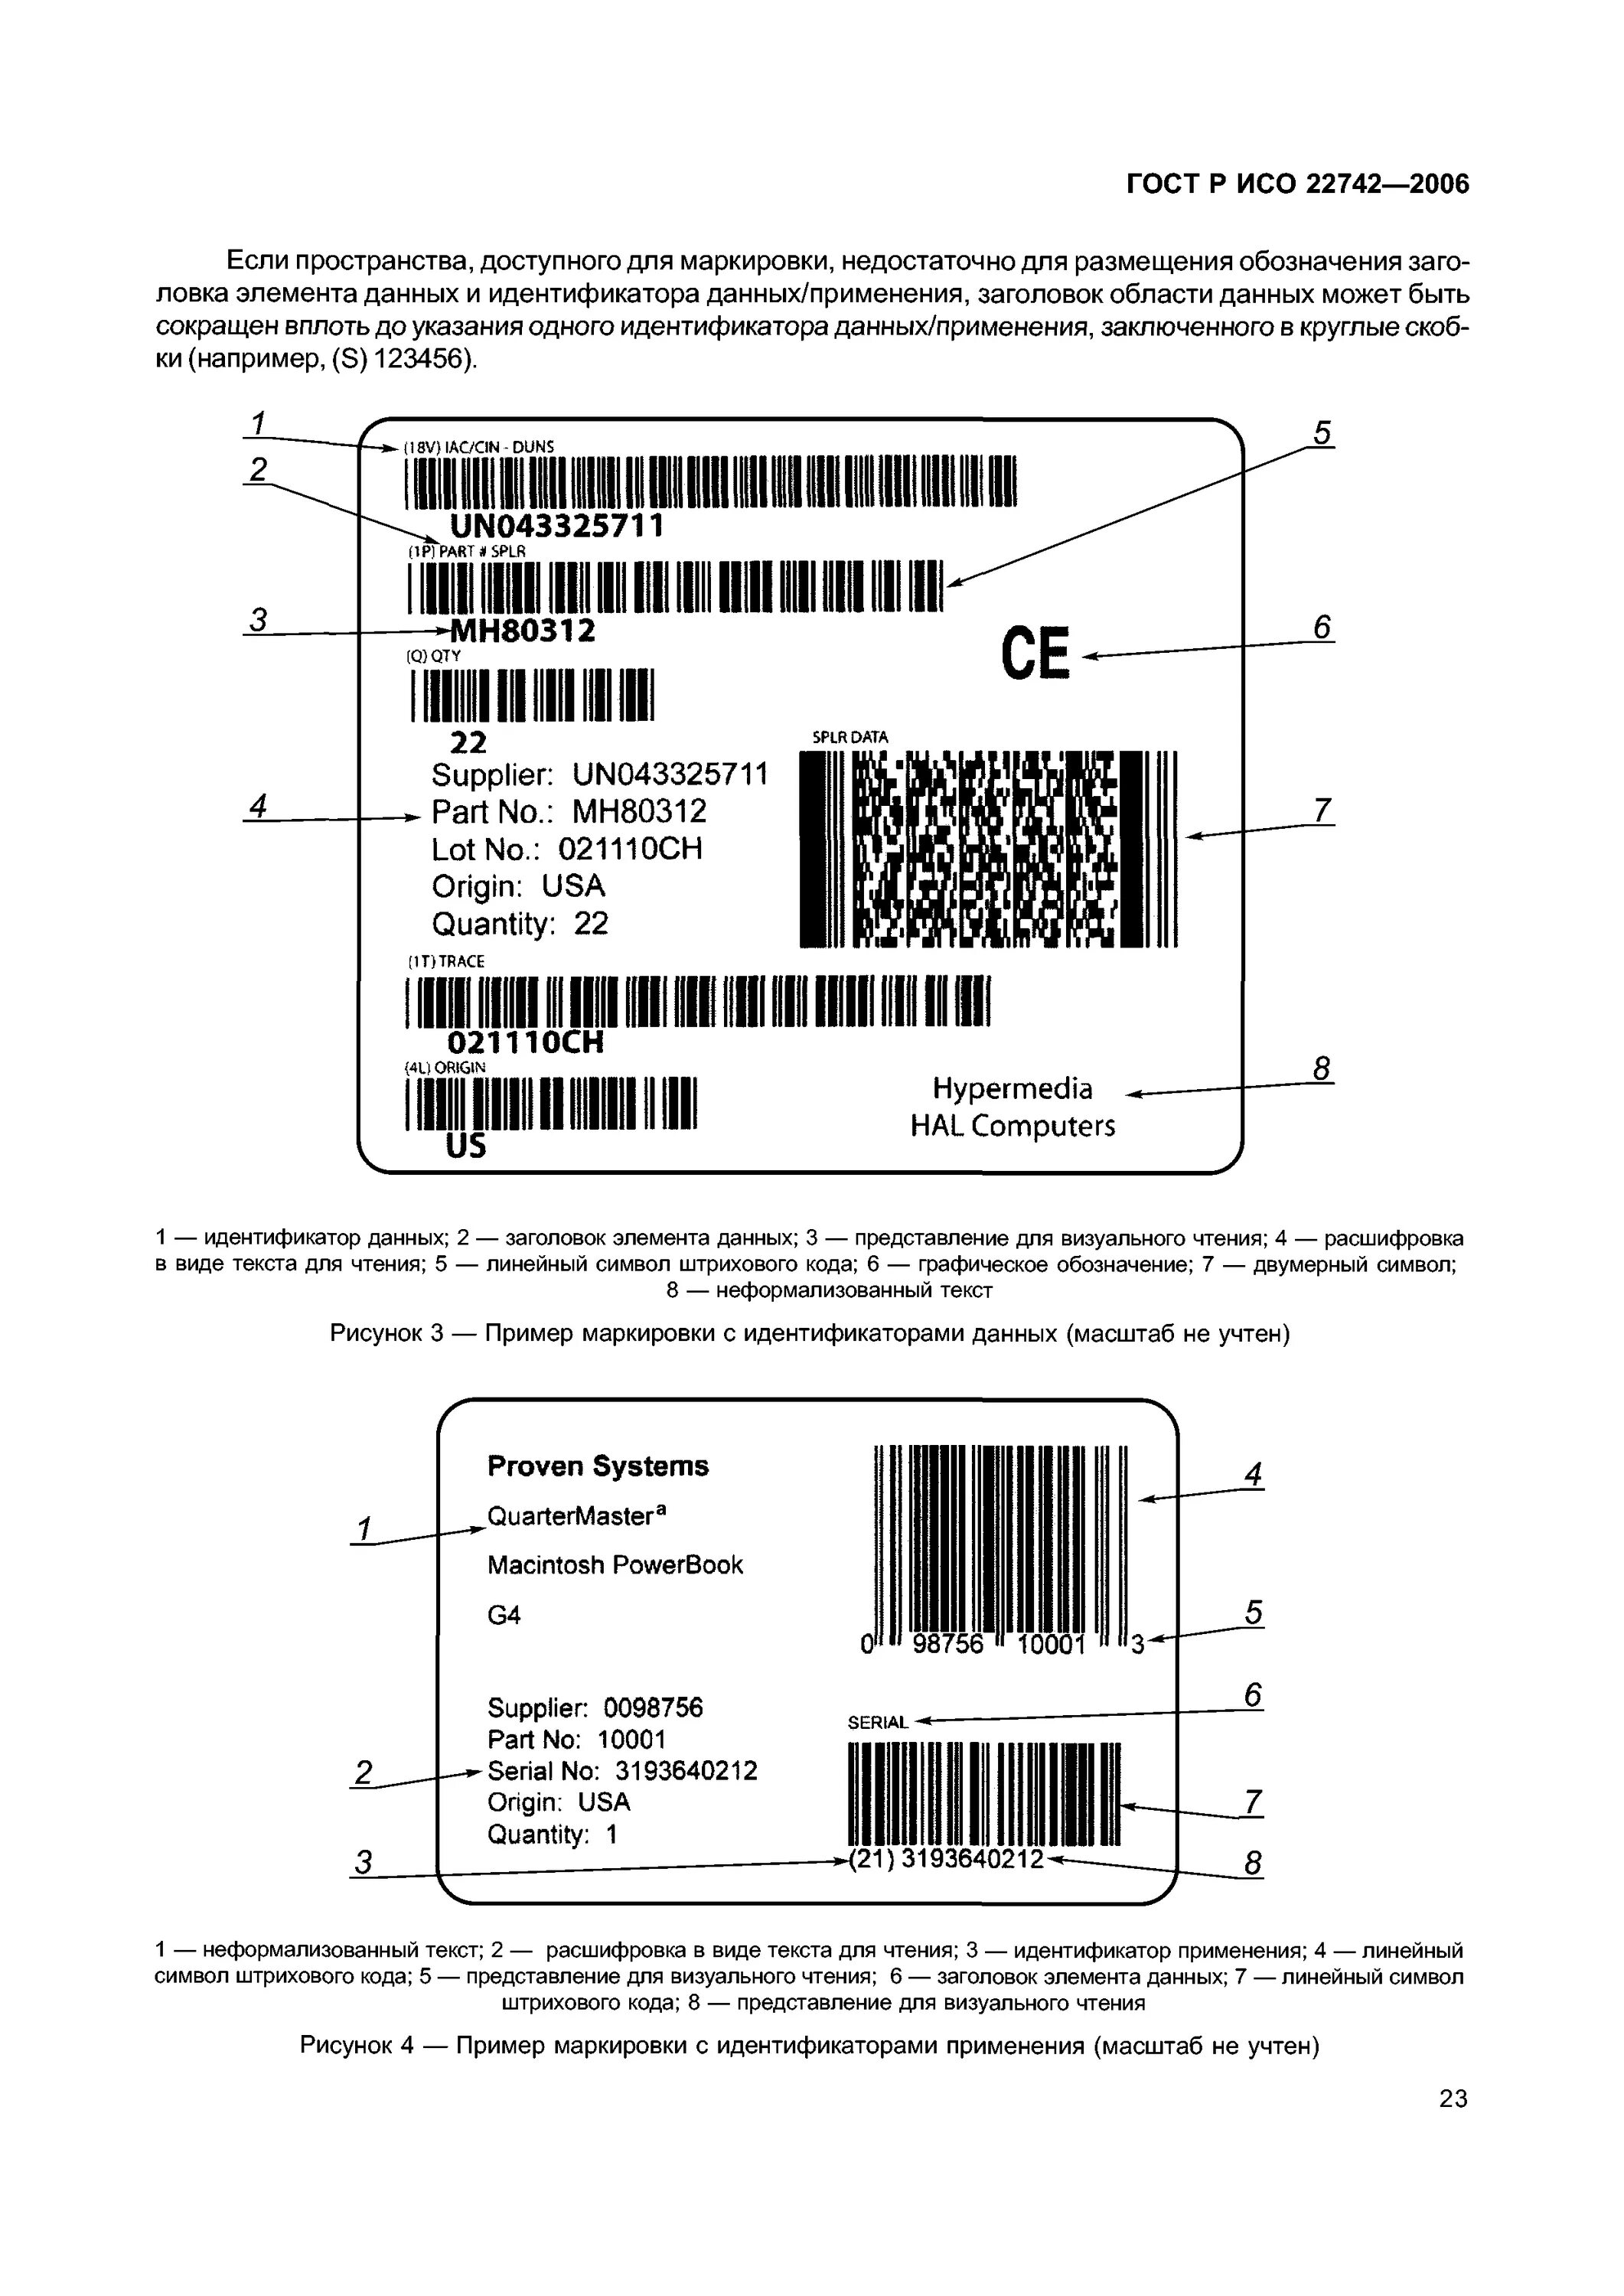 Идентификация маркировки и штриховое кодирование. Технология штрихового кодирования (Bar code Technologies). Штриховая автоматическая идентификация. Пример штрих кода маркировки.